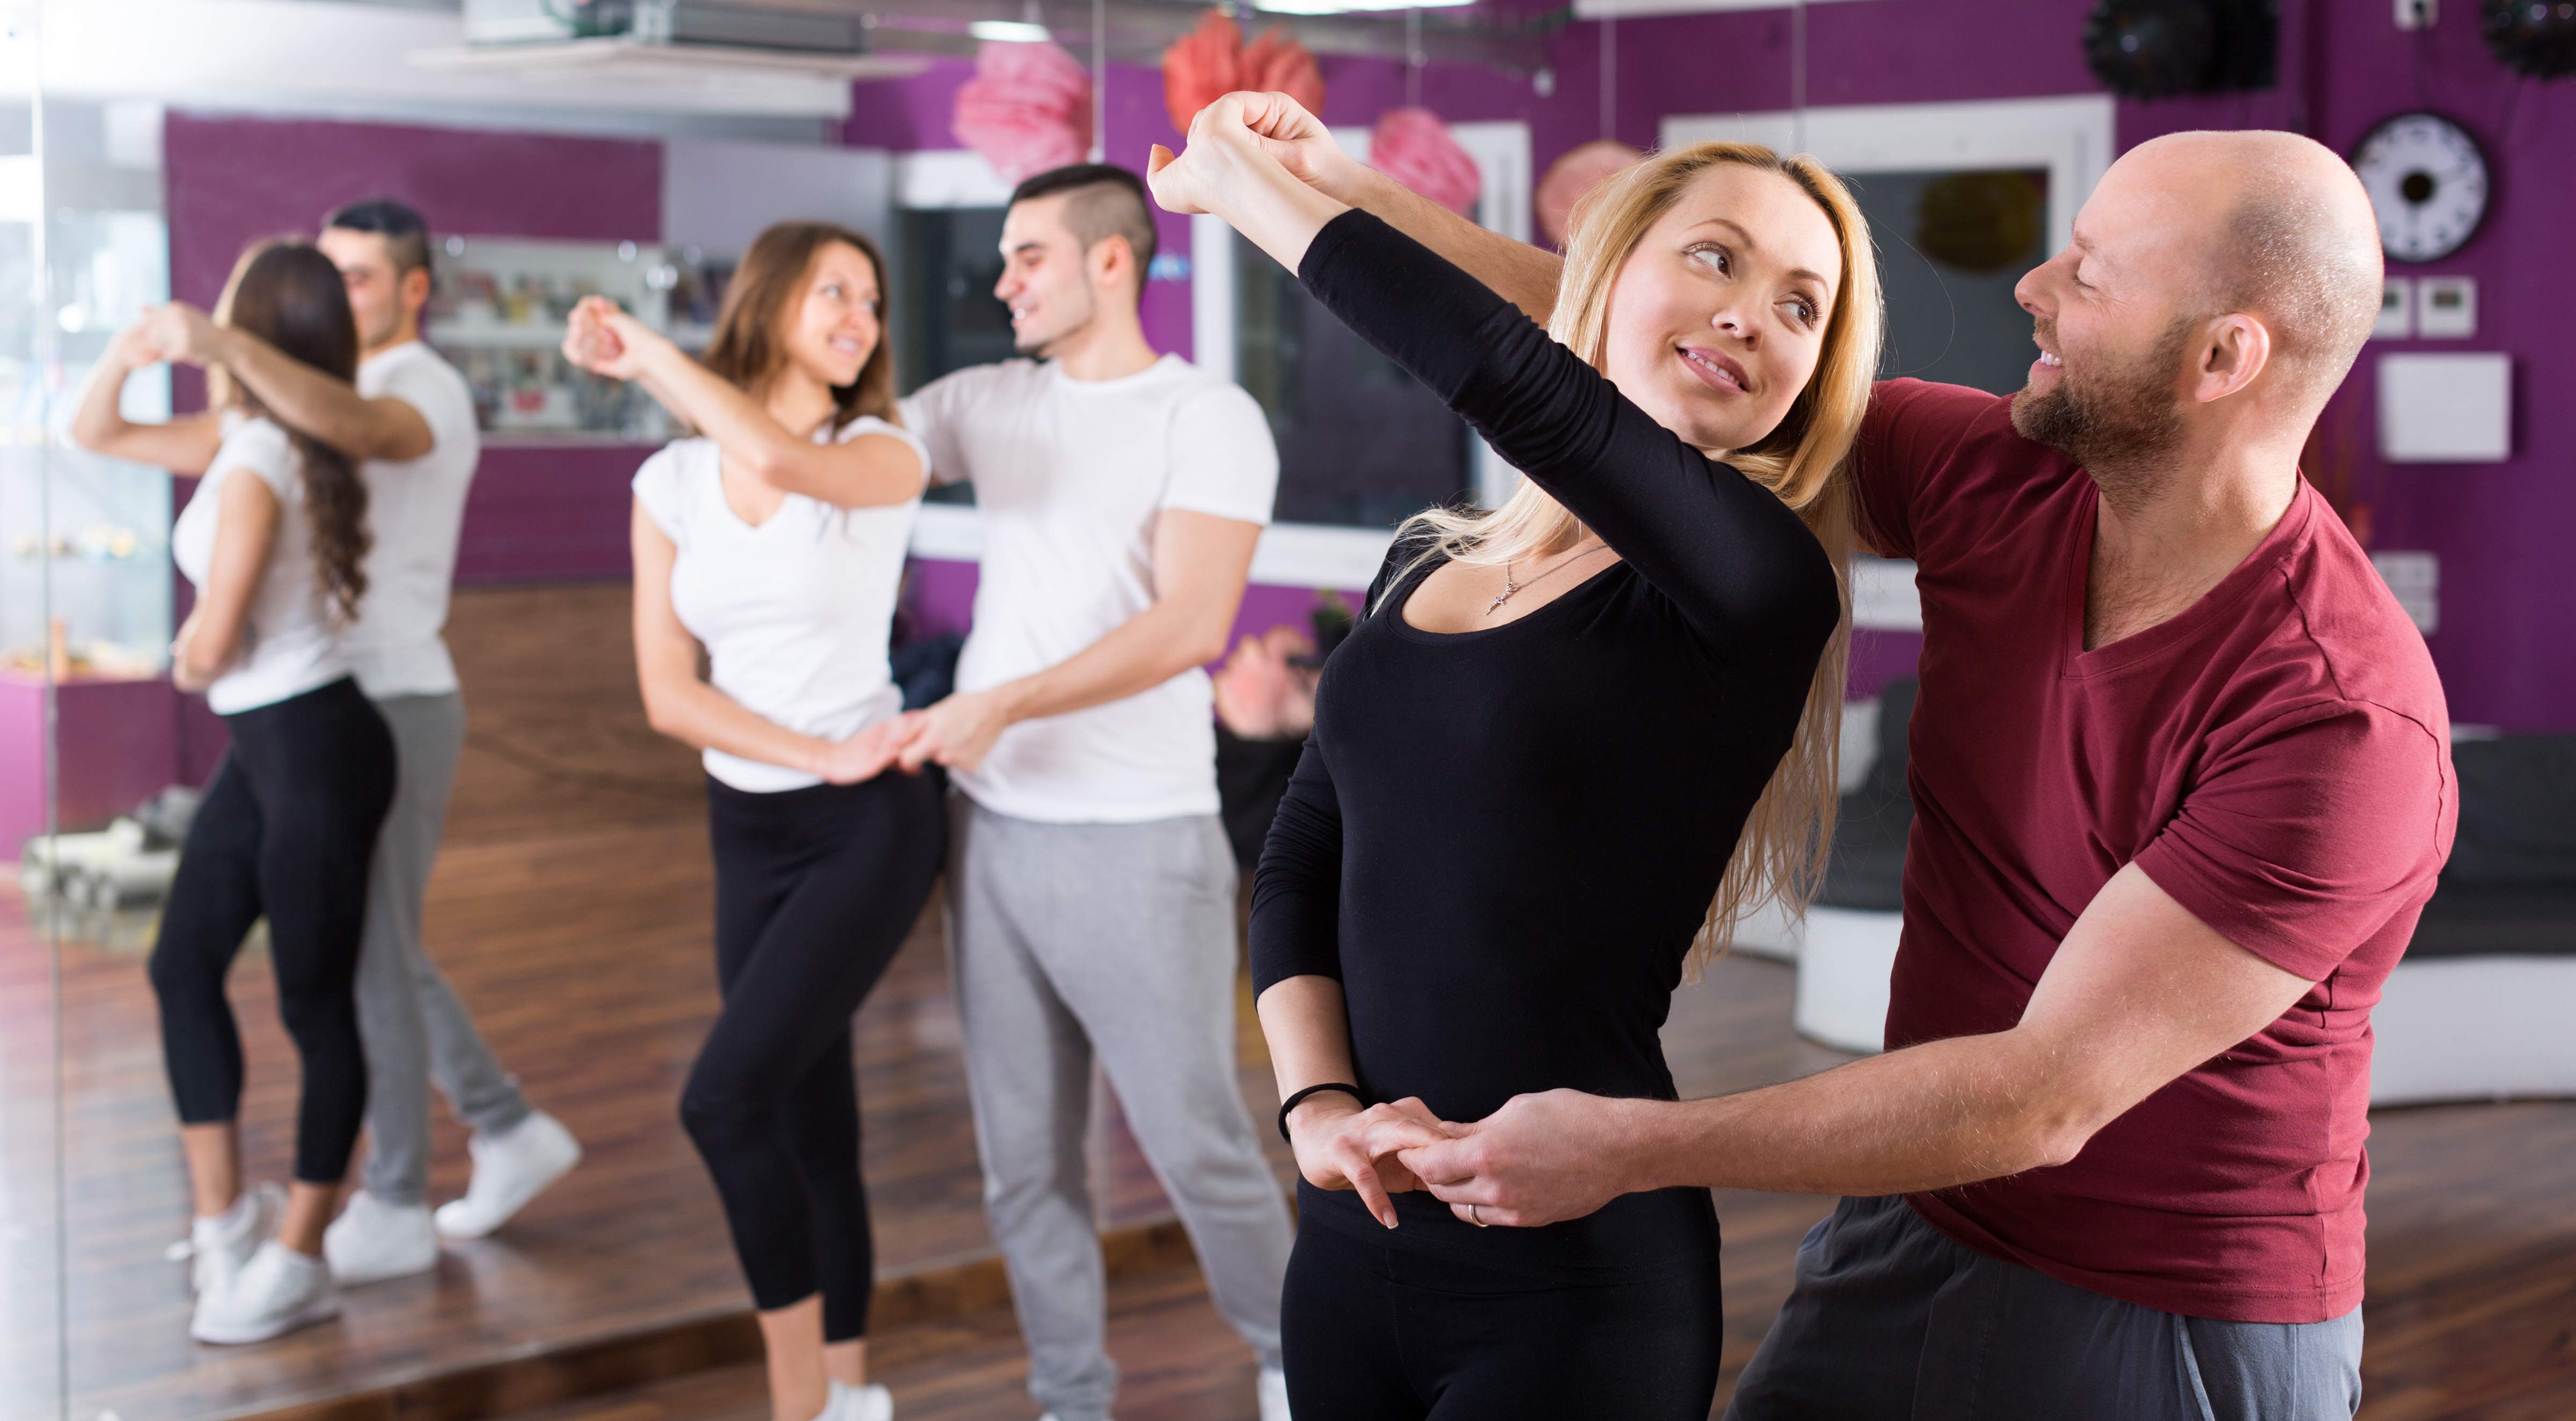 Dieser Kurs mit Walzer, Discofox und Co. steckt voller Überraschungen für alle Tanzfreunde